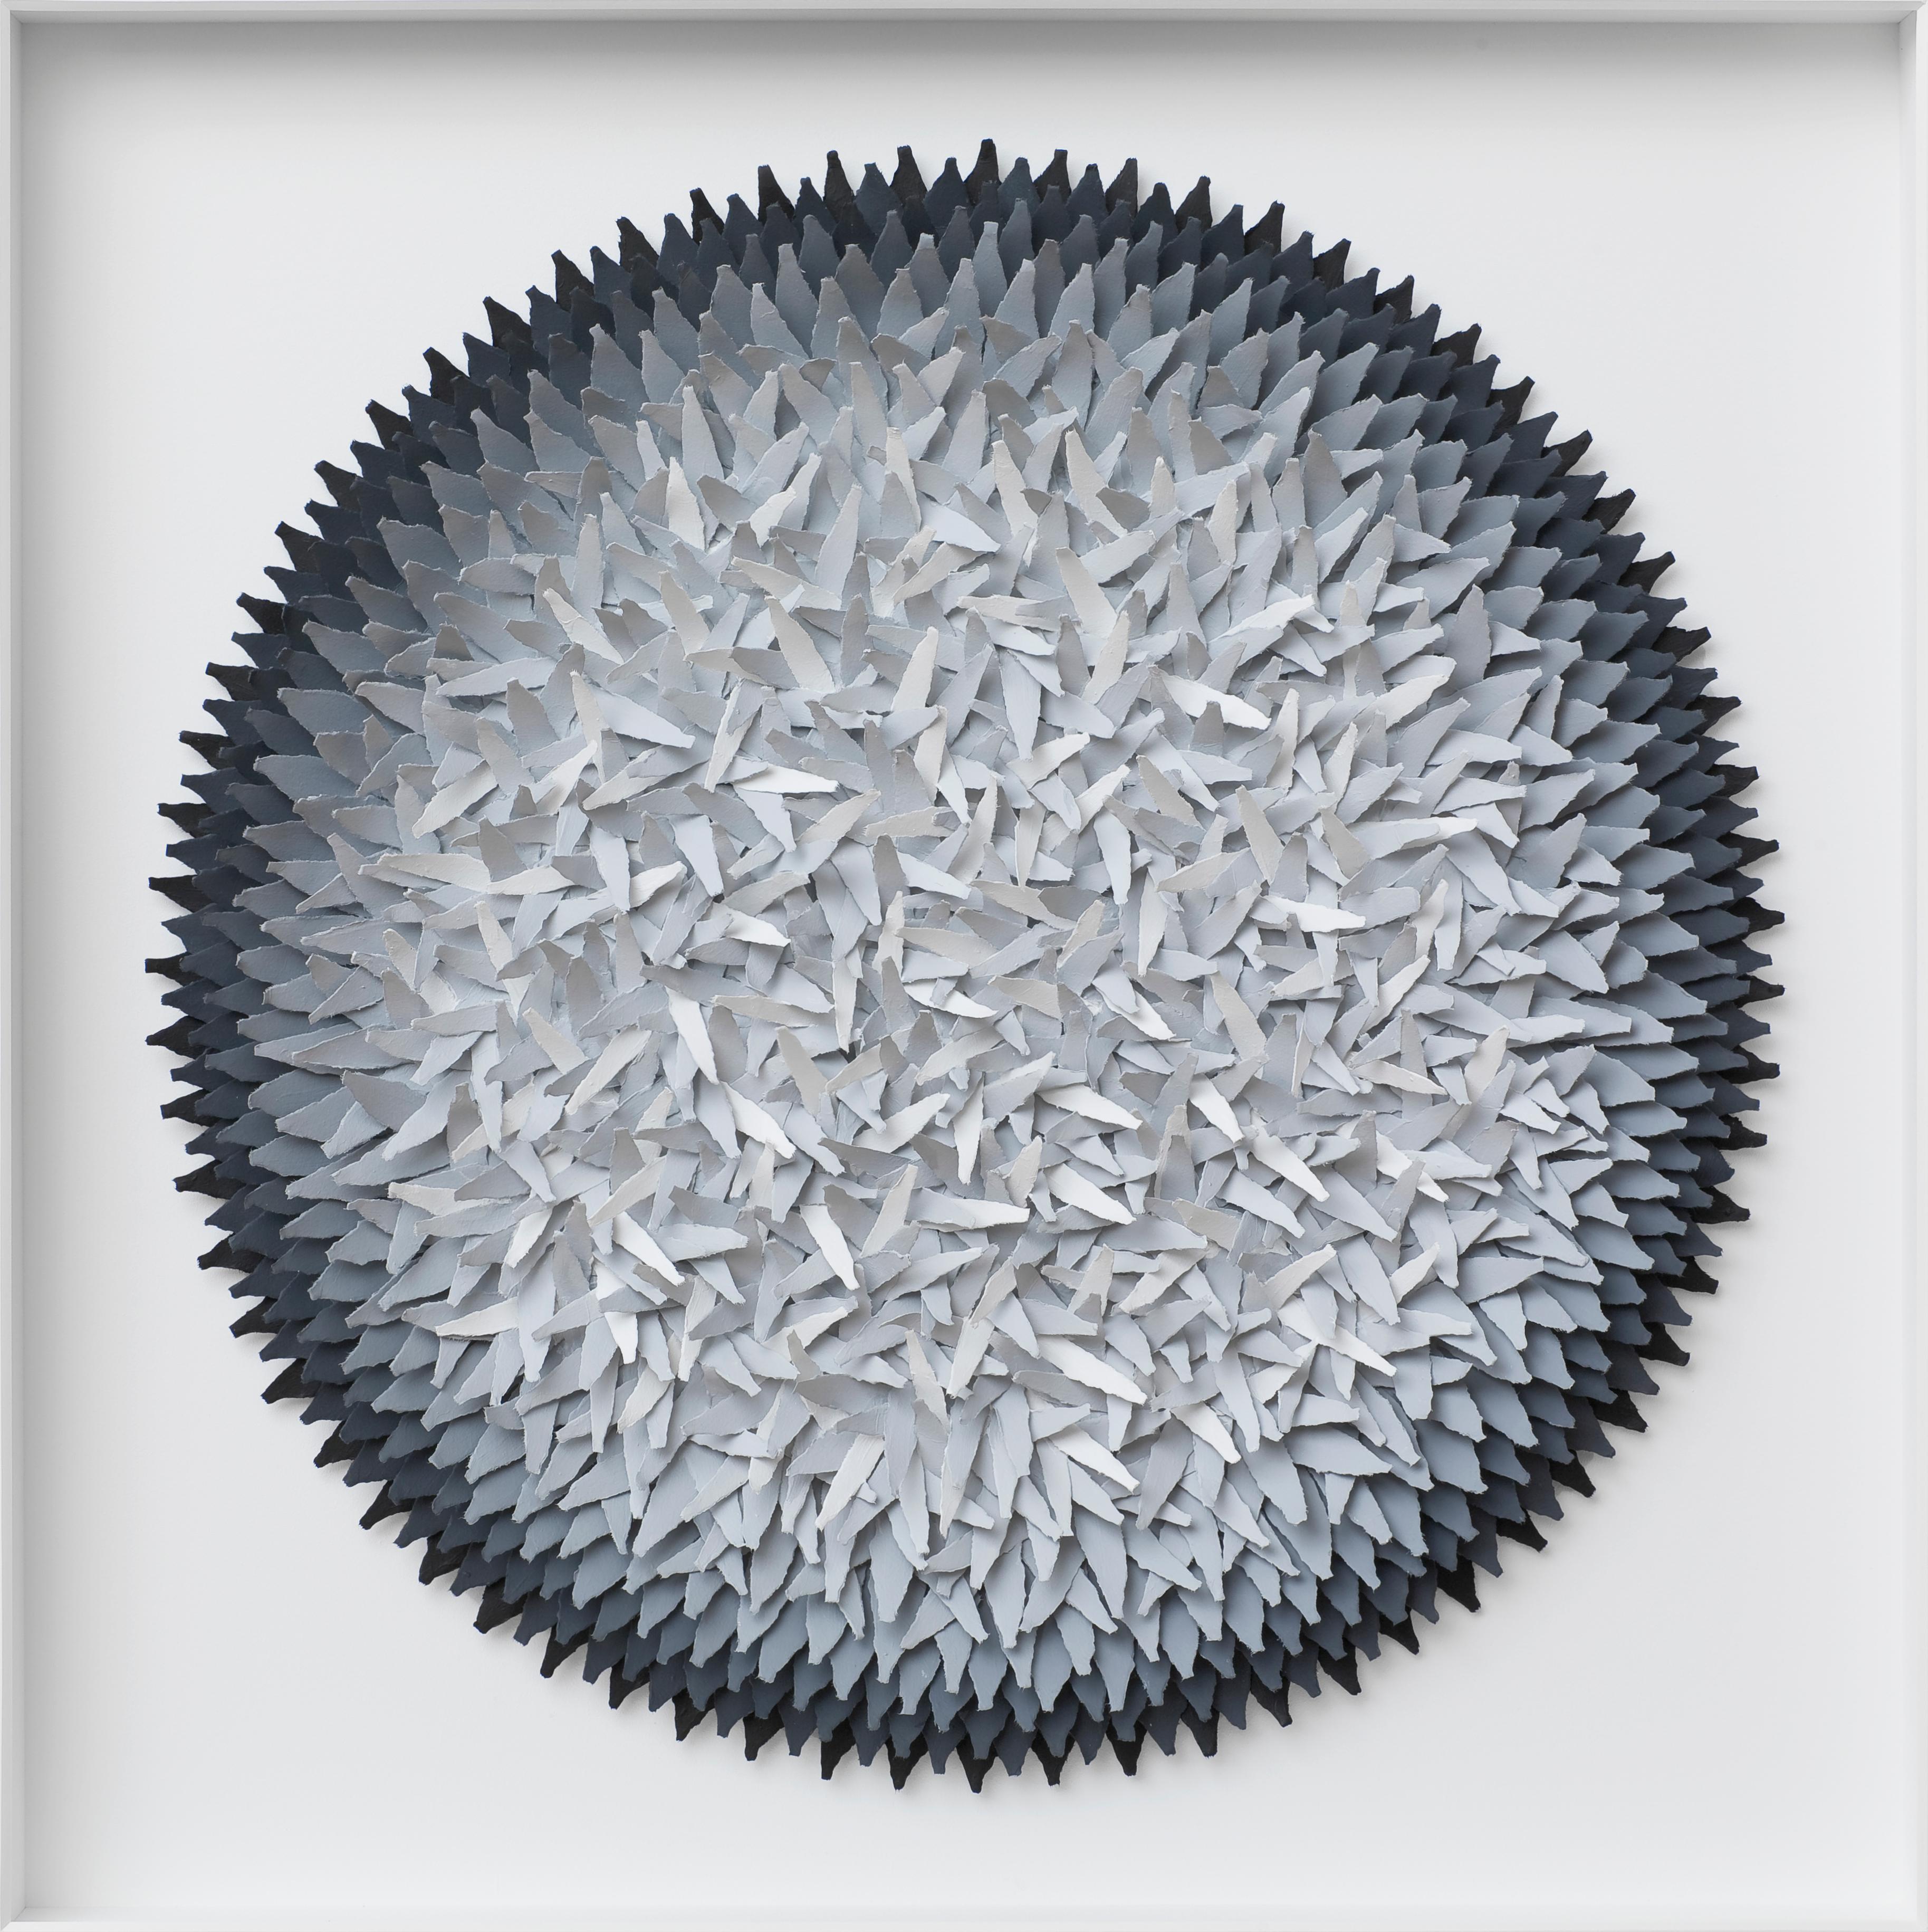 Assemblage Grauer Gradient – abstraktes zeitgenössisches dreidimensionales Kunstwerk  – Mixed Media Art von Volker Kuhn